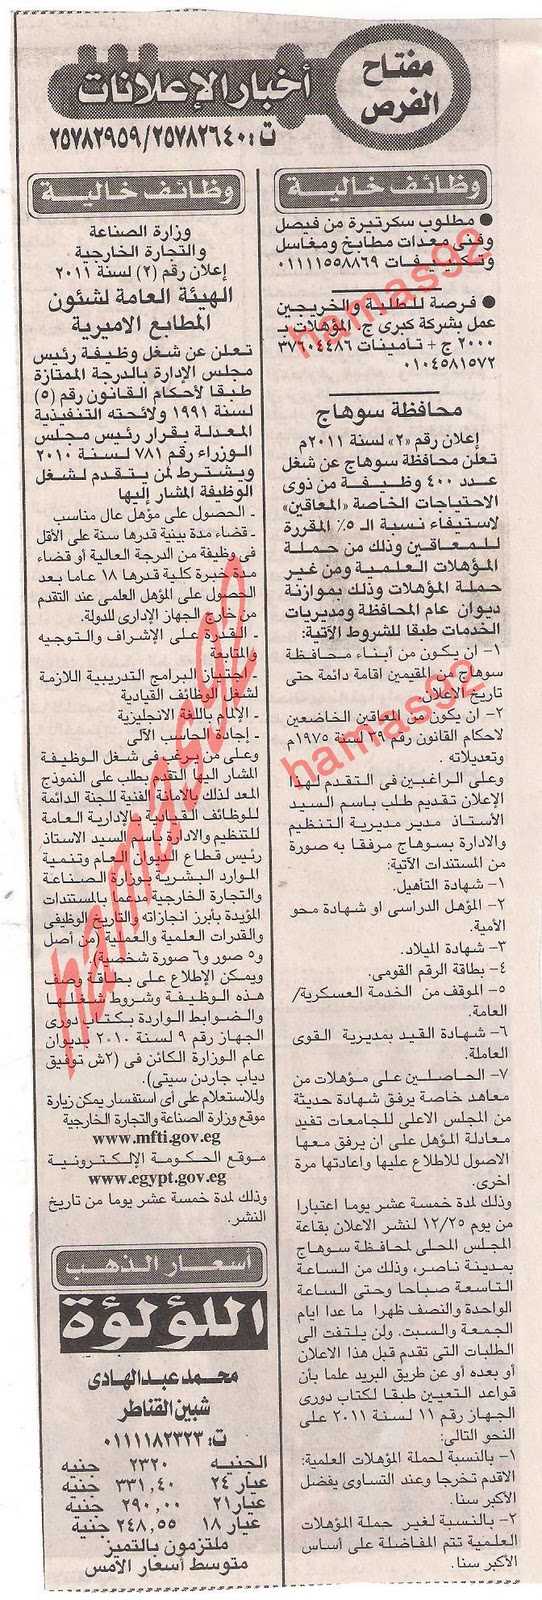 وظائف جريدة الاخبار الثلاثاء 13 ديسمبر 2011  Picture+002